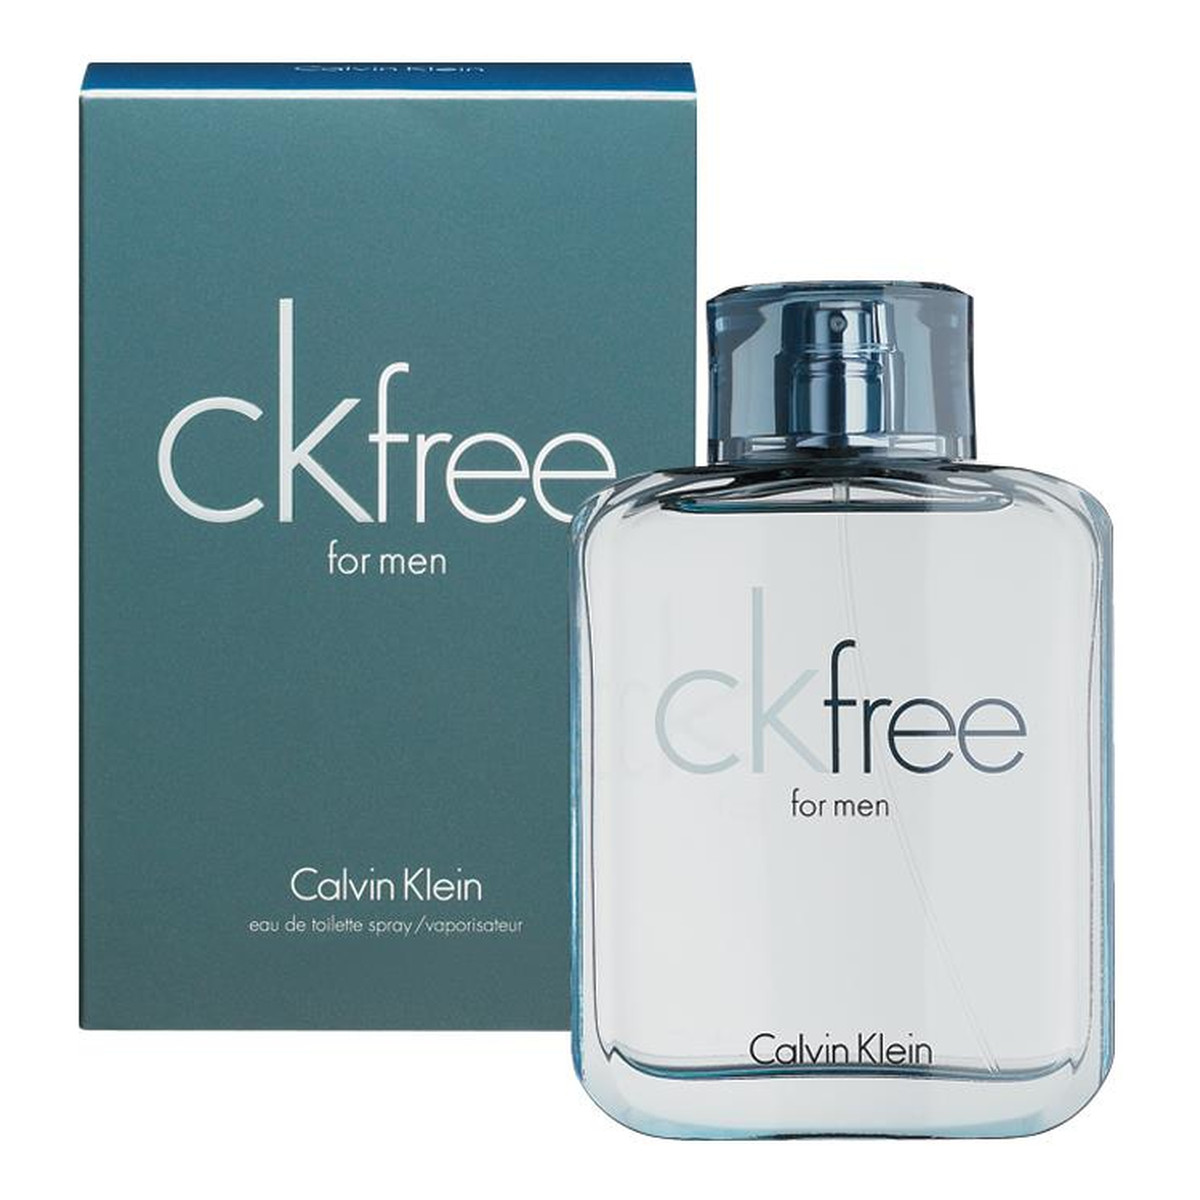 Calvin Klein CK Free Woda toaletowa spray 30ml